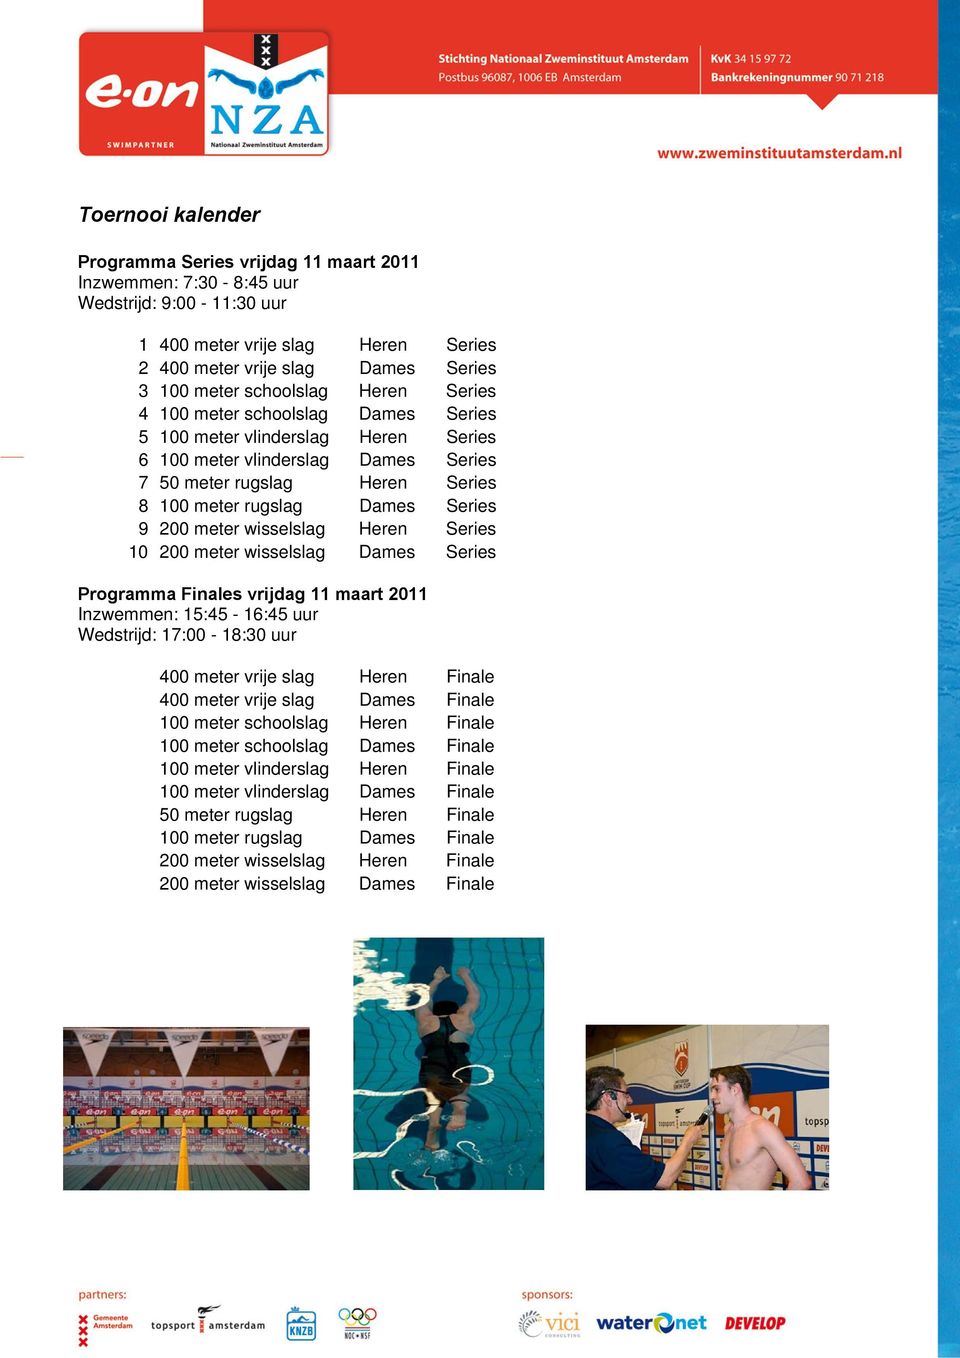 9 200 meter wisselslag Heren Series 10 200 meter wisselslag Dames Series Programma Finales vrijdag 11 maart 2011 Inzwemmen: 15:45-16:45 uur Wedstrijd: 17:00-18:30 uur 400 meter vrije slag Heren